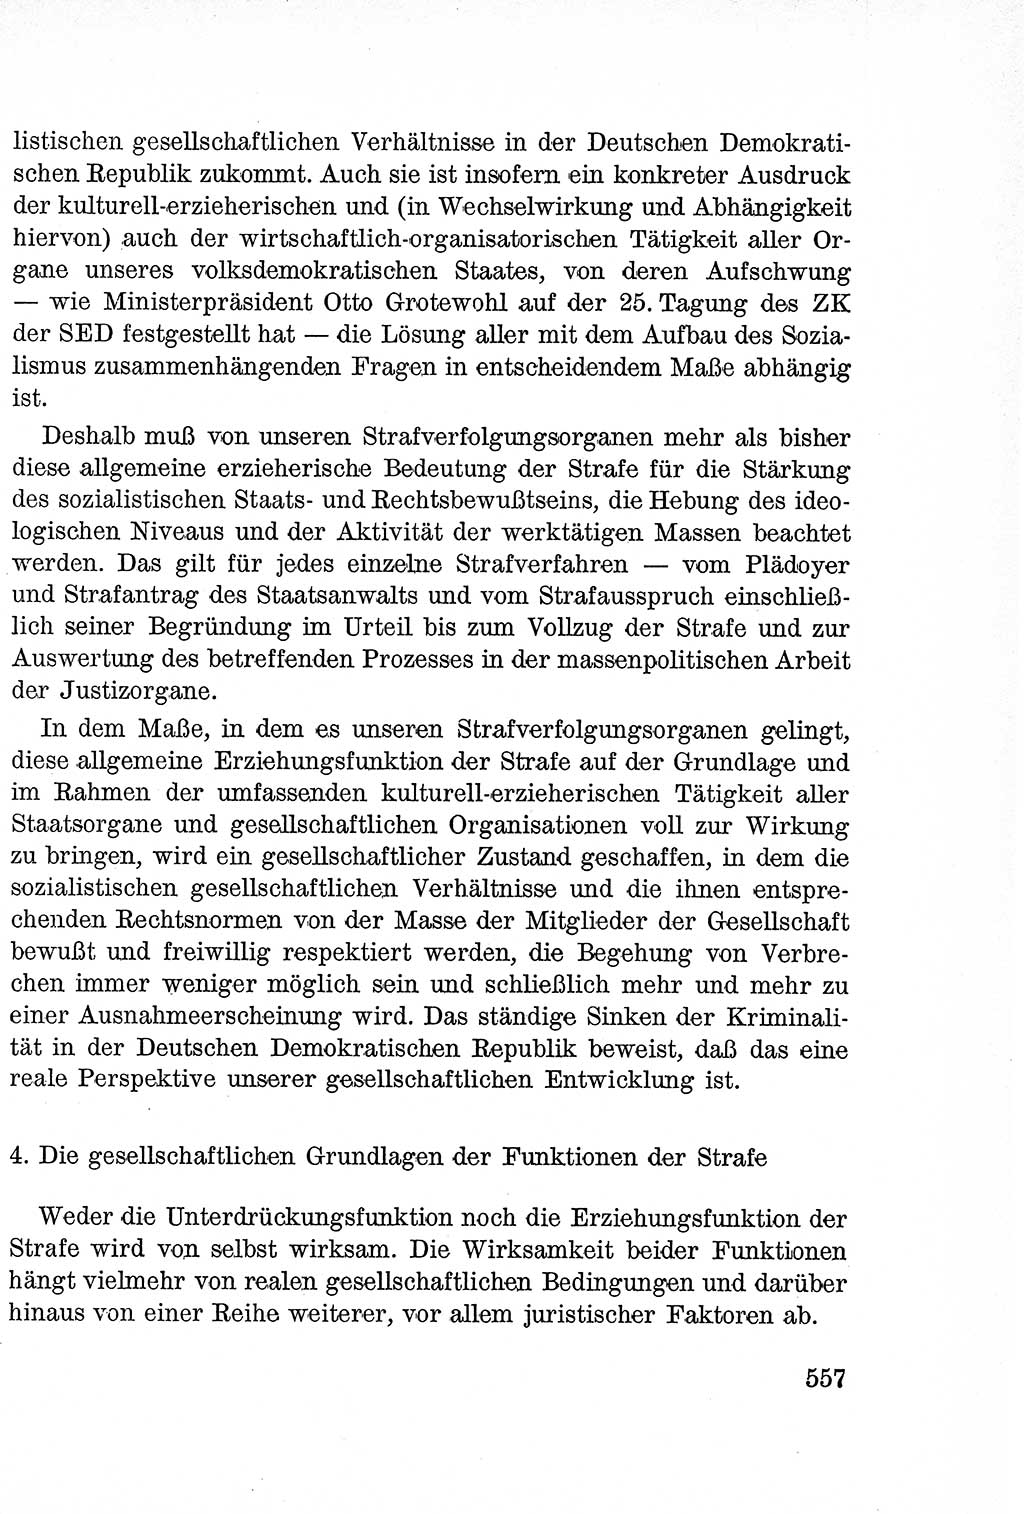 Lehrbuch des Strafrechts der Deutschen Demokratischen Republik (DDR), Allgemeiner Teil 1957, Seite 557 (Lb. Strafr. DDR AT 1957, S. 557)